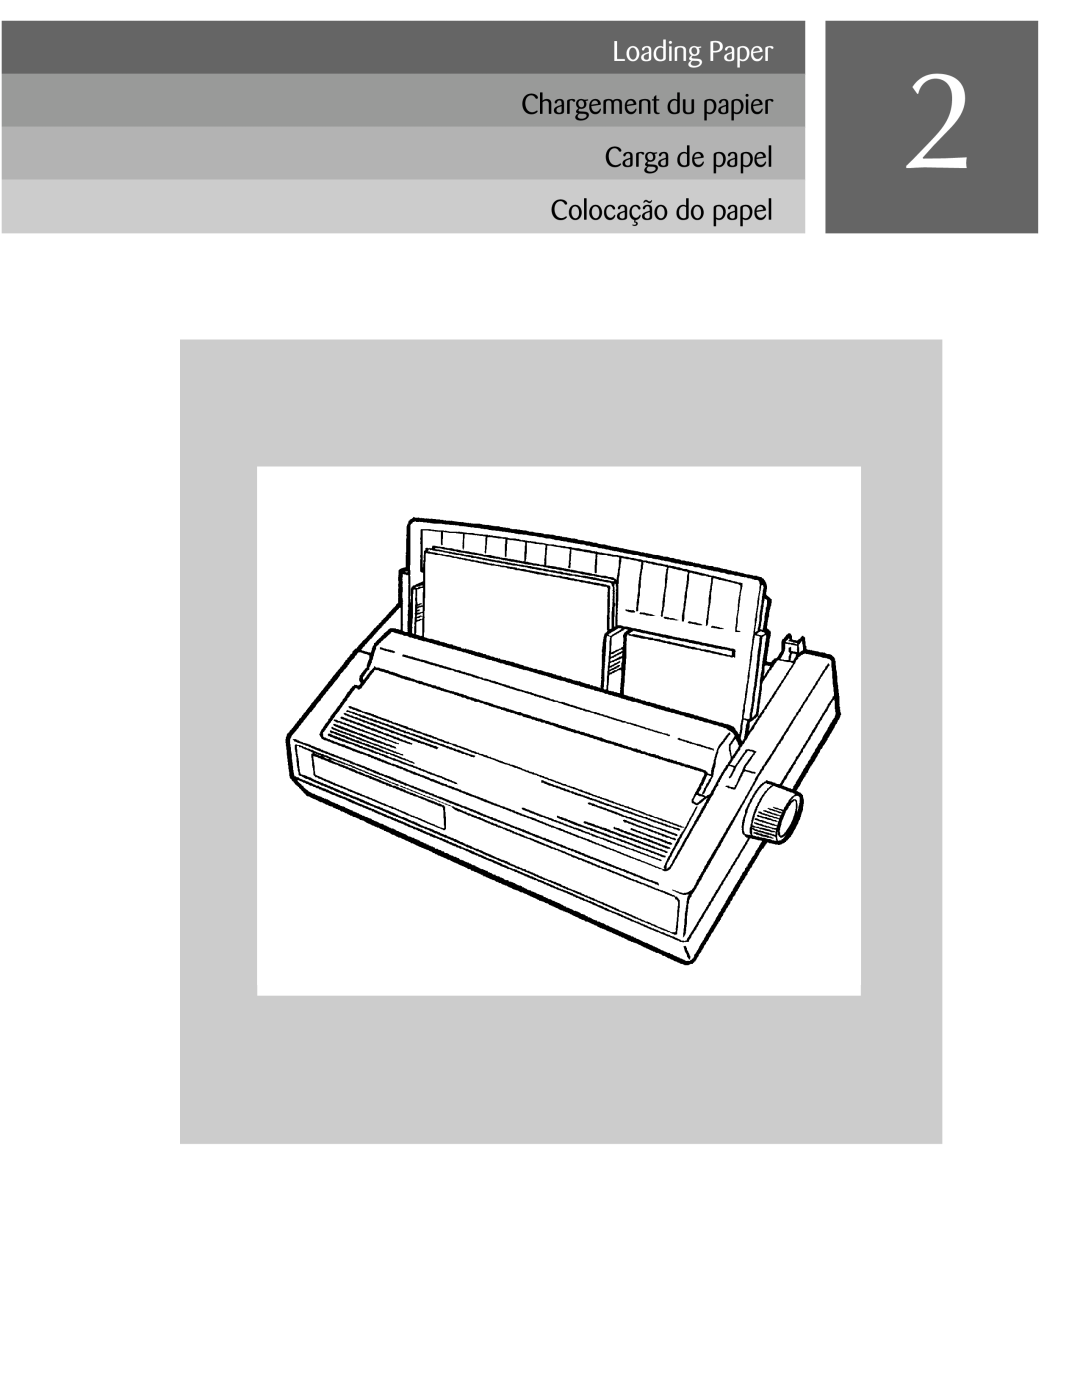 Oki ML590 manual Loading Paper, Colocação do papel 